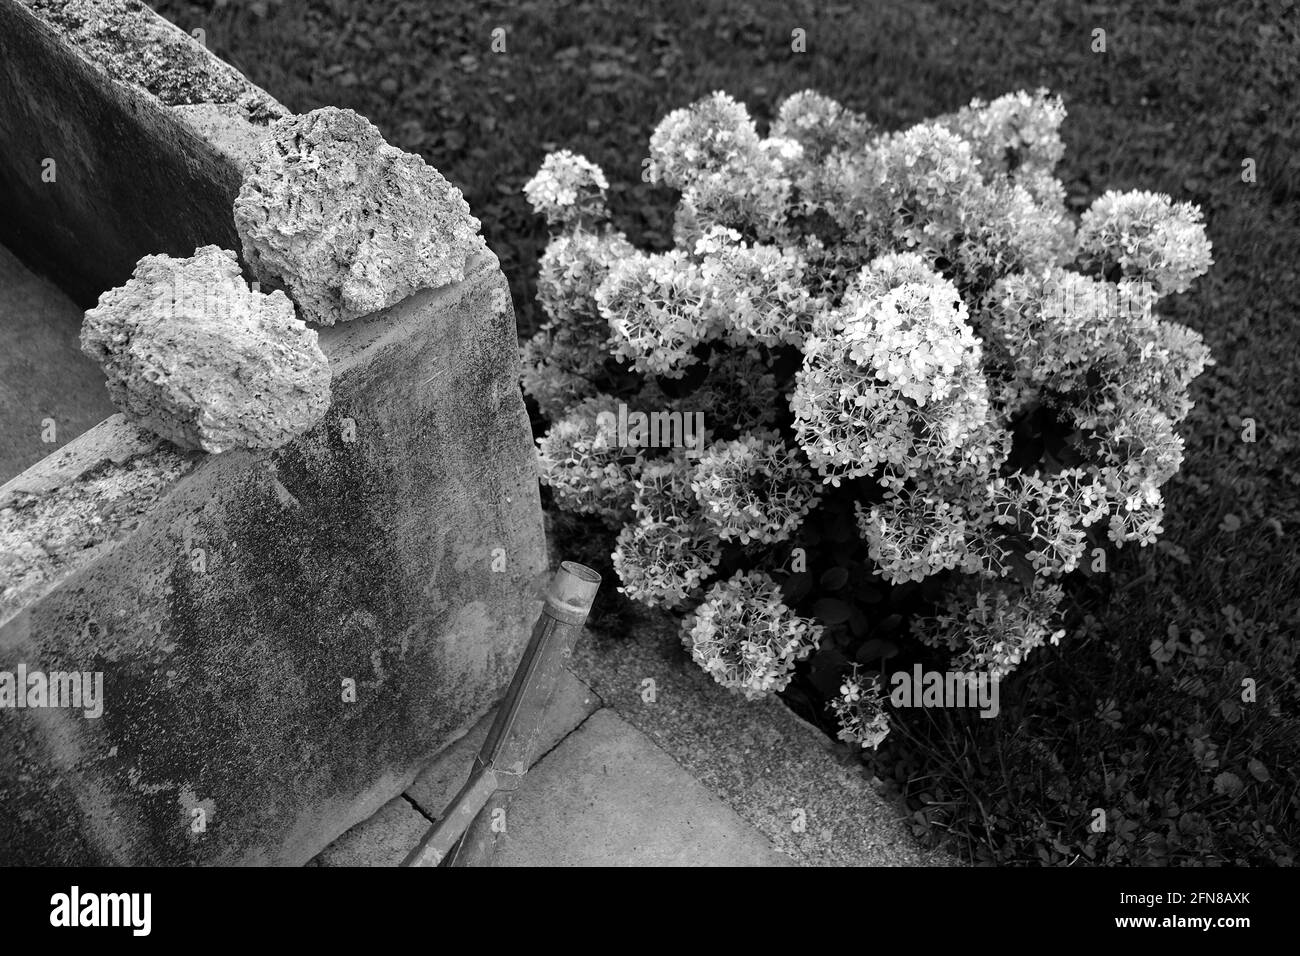 Prise de vue en niveaux de gris d'un arbuste à base d'hortensia panicolé dans le jardin Banque D'Images